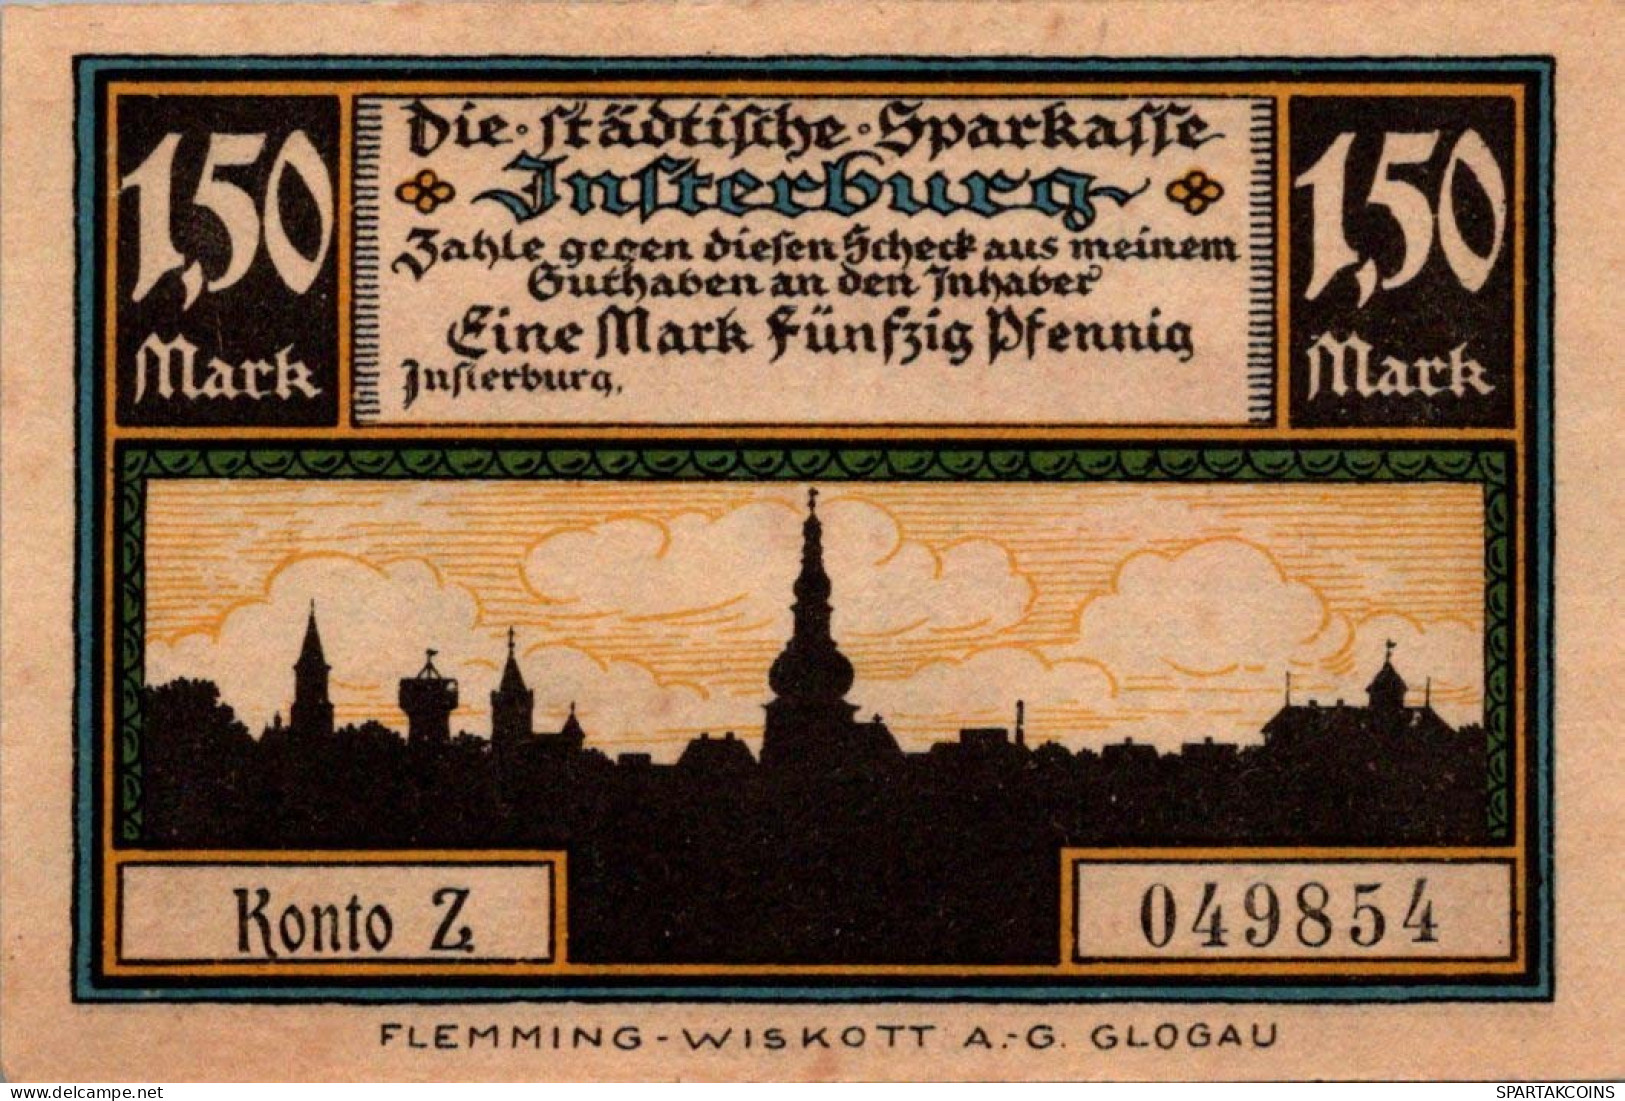 1.5 MARK 1914-1924 Stadt INSTERBURG East PRUSSLAND UNC DEUTSCHLAND Notgeld #PD171 - [11] Local Banknote Issues